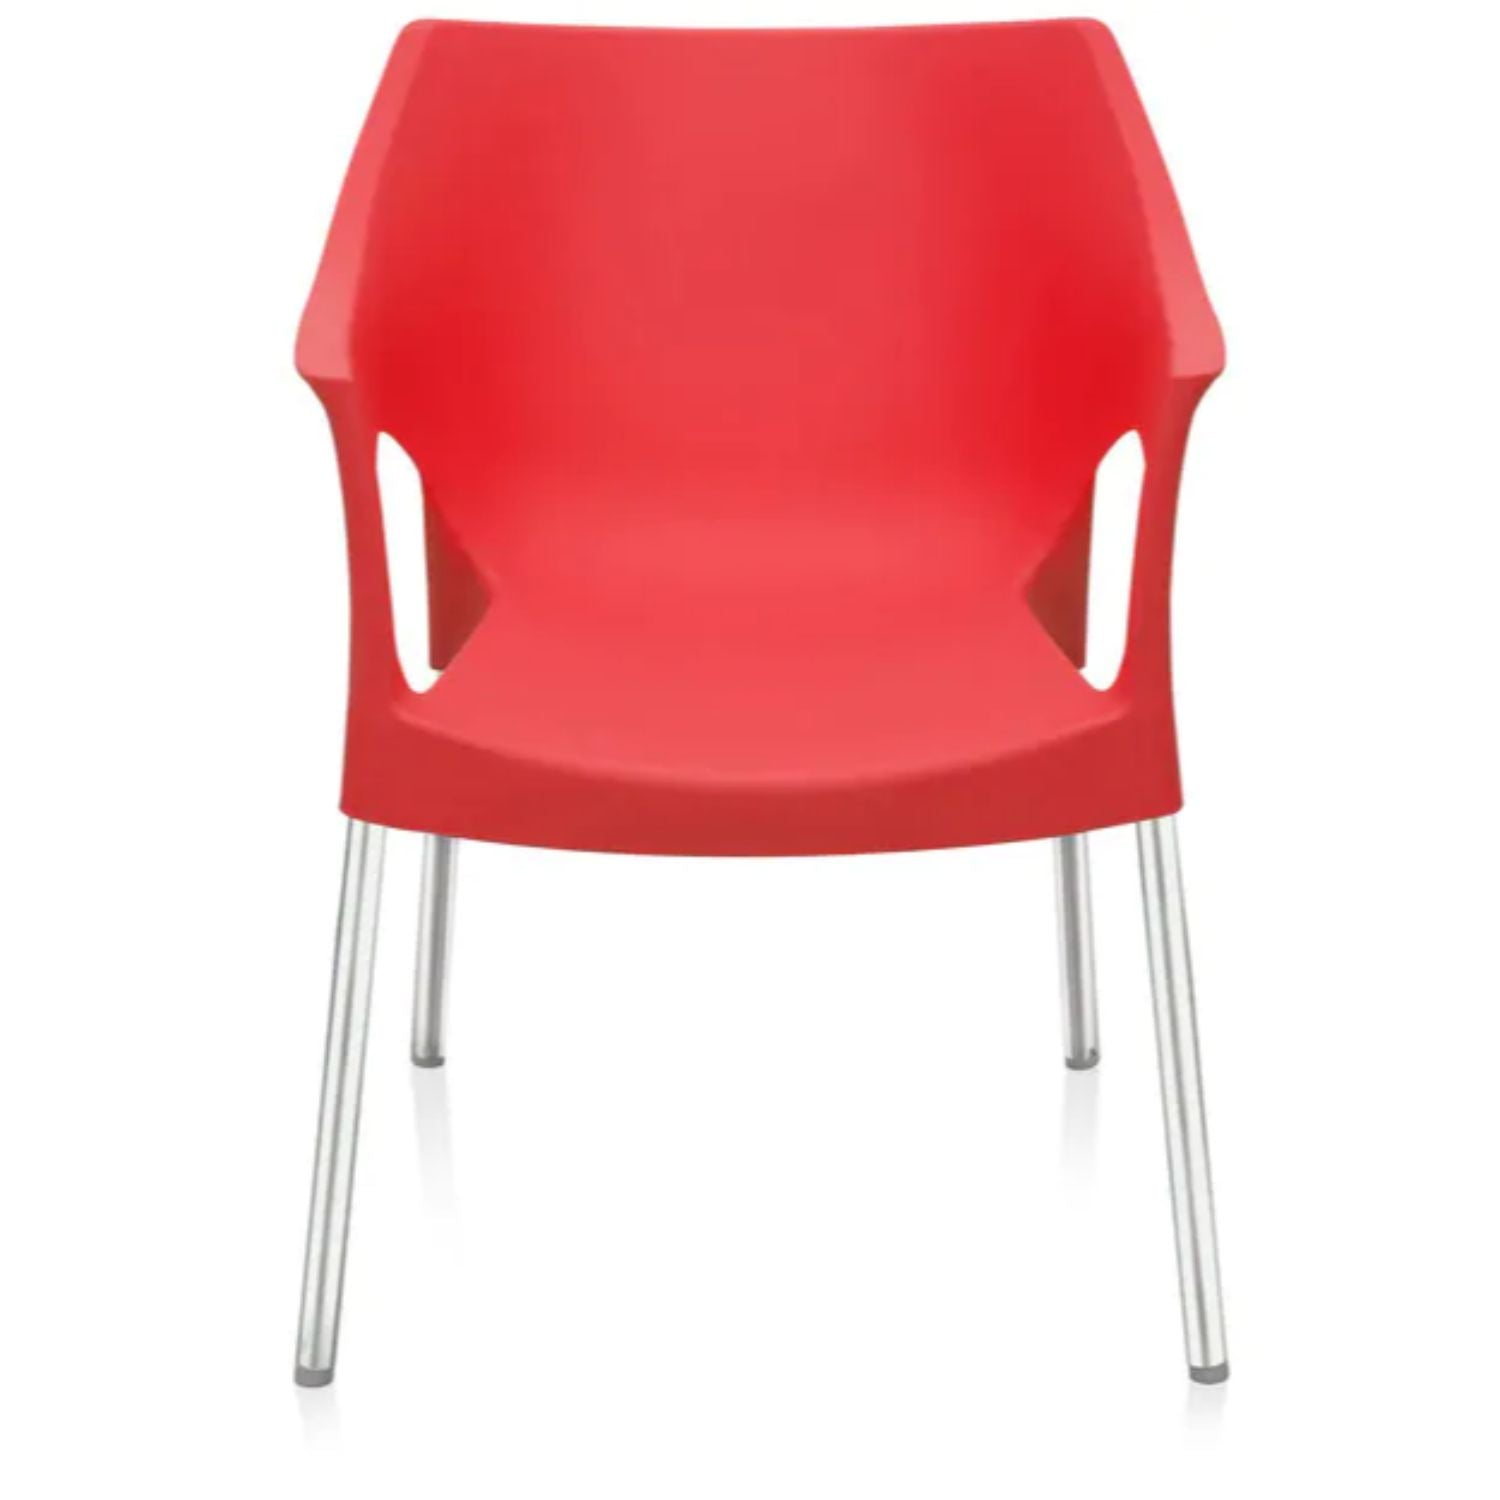 Nilkamal Novella 10 Stainless Steel Chair (Bright Red)